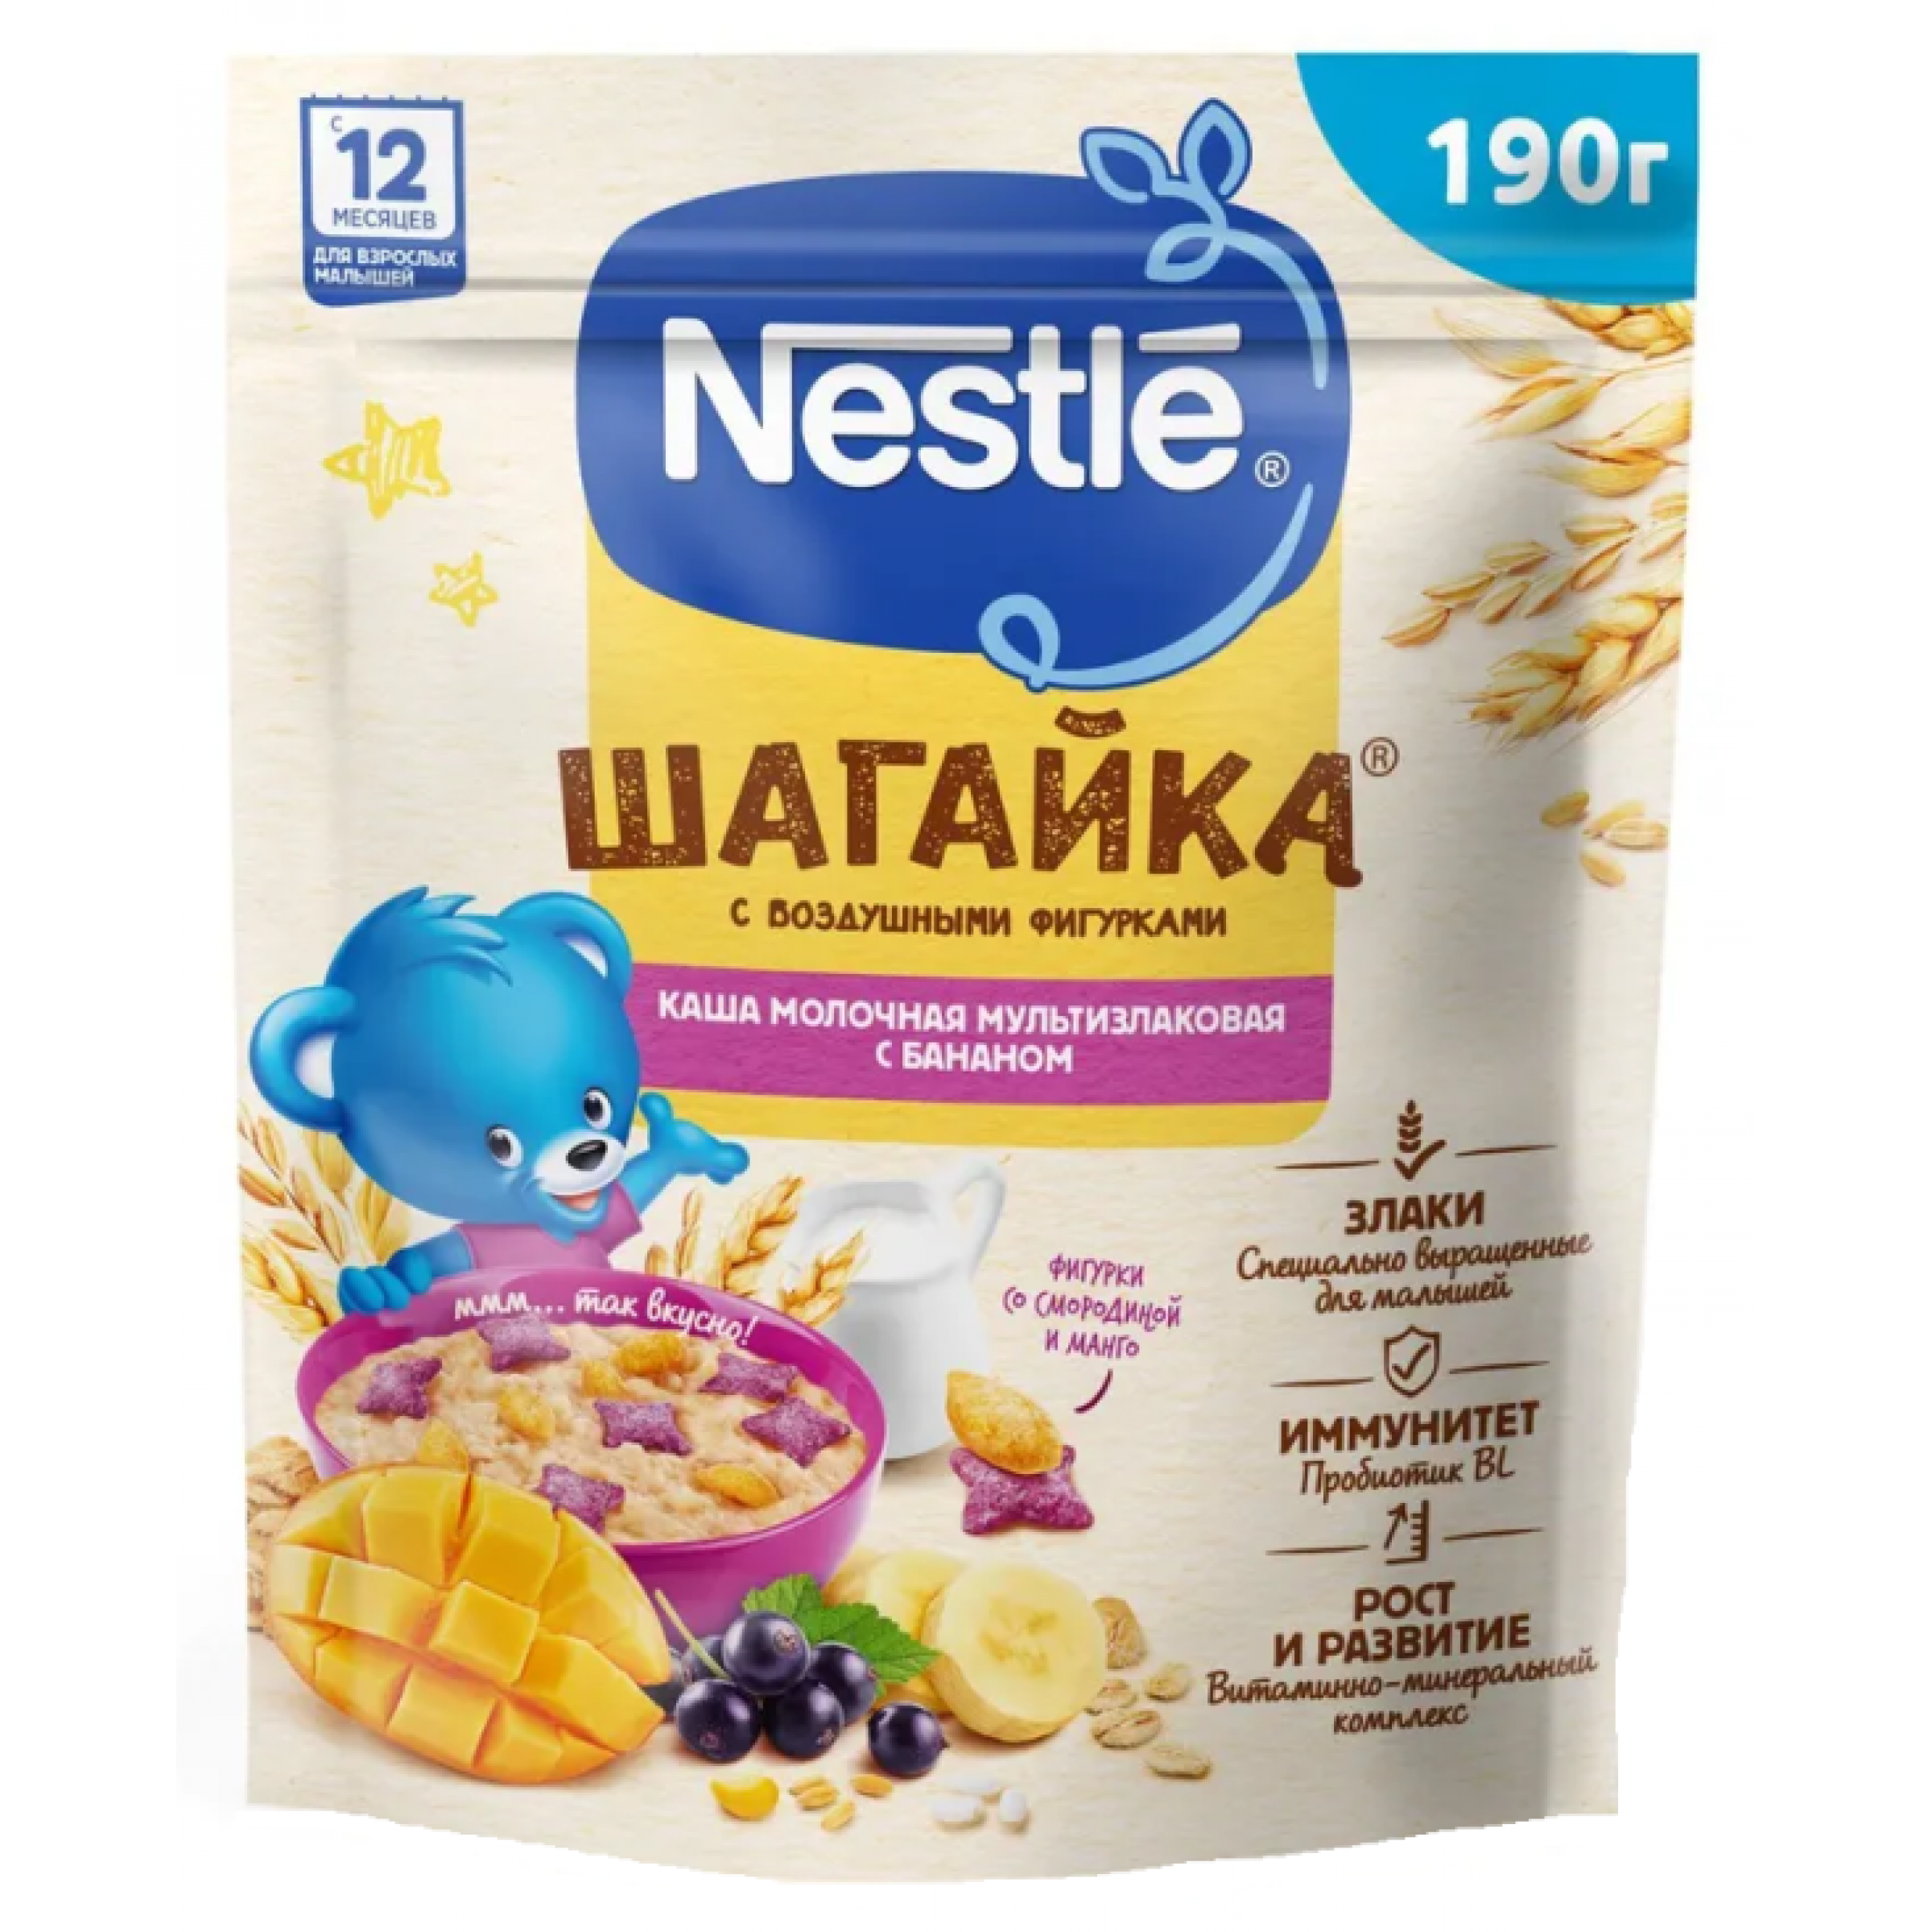 Сухая молочная мультизлаковая каша Nestle Шагайка с баноном и черной смородиной, 190 г